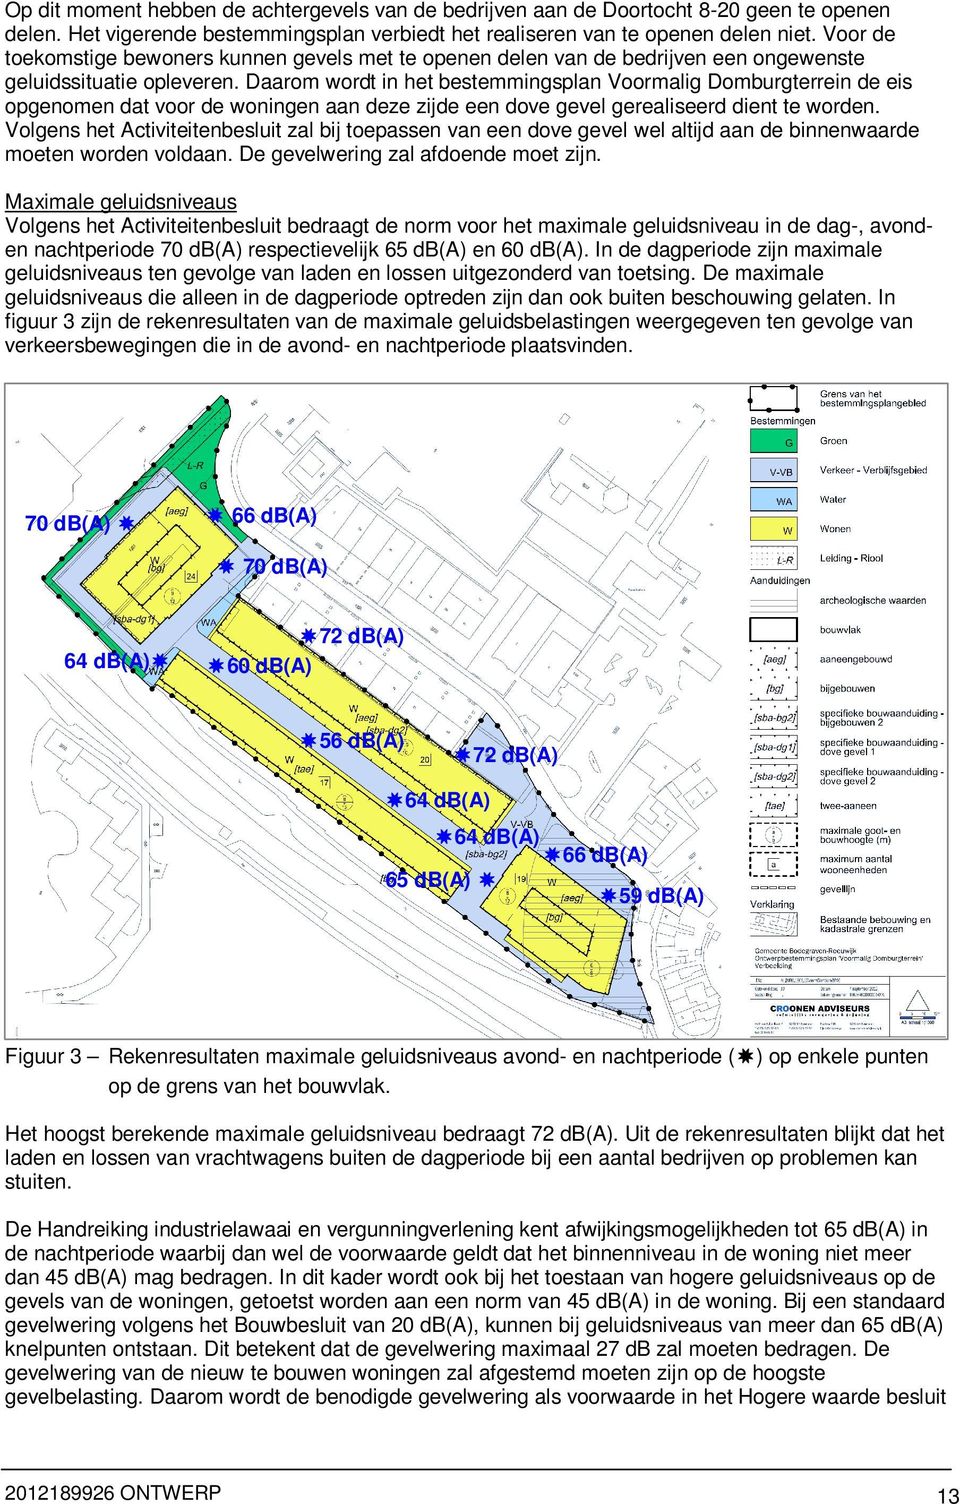 Daarom wordt in het bestemmingsplan Voormalig Domburgterrein de eis opgenomen dat voor de woningen aan deze zijde een dove gevel gerealiseerd dient te worden.